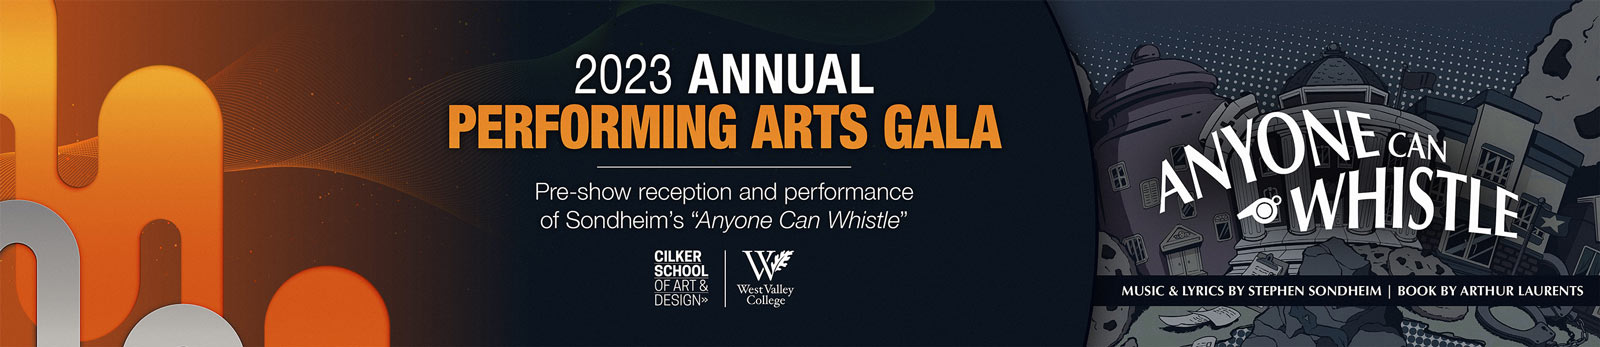 Performing Arts Gala 2023